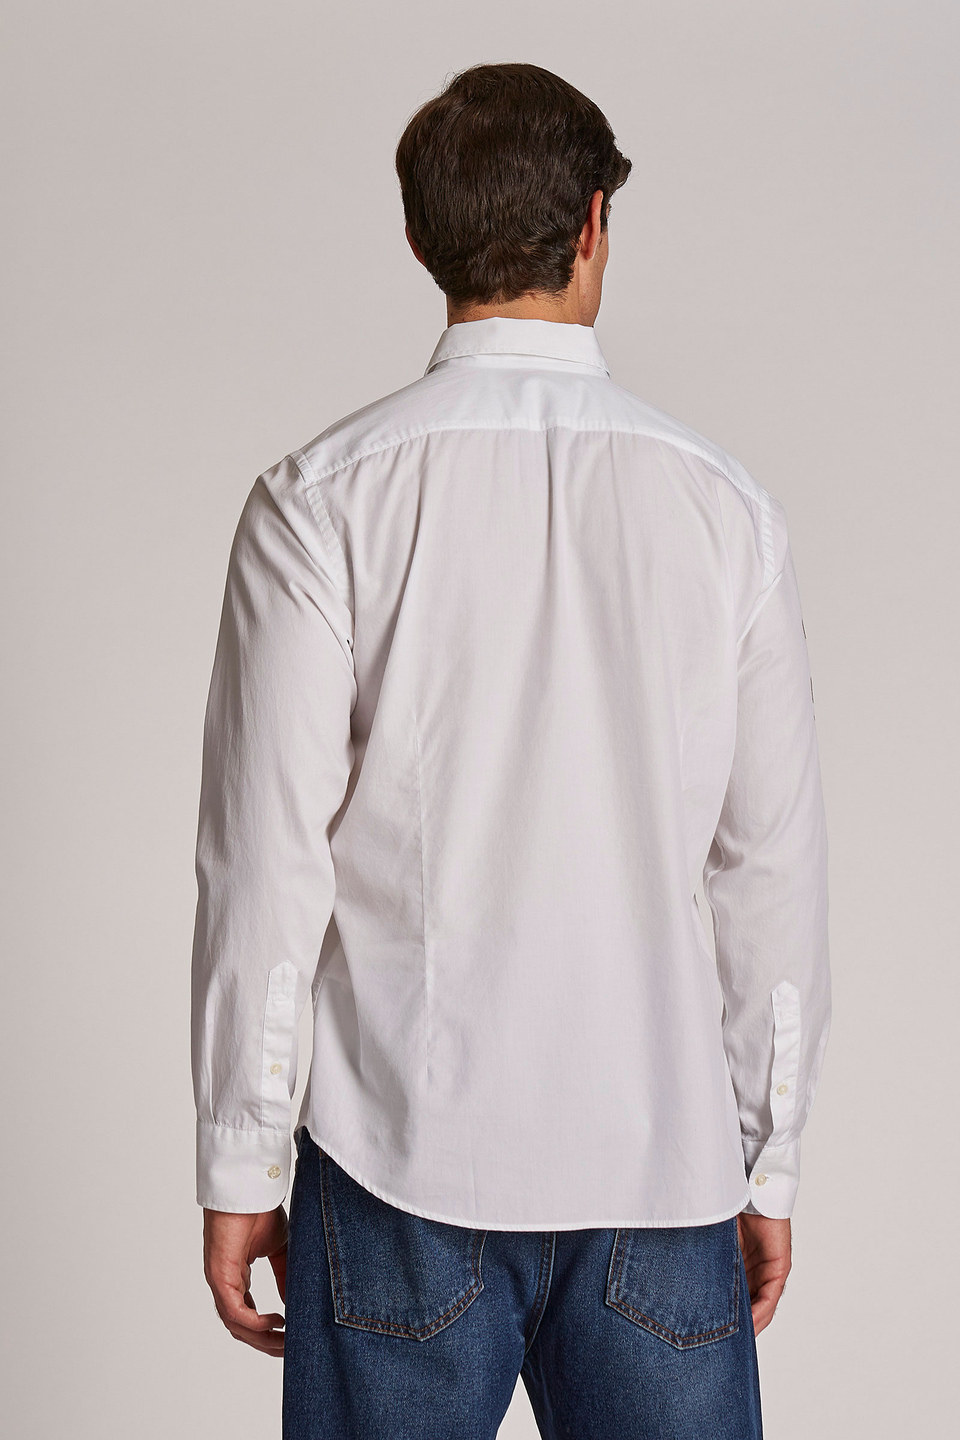 Camicia classicaErmenegildo Zegna in Cotone da Uomo colore Bianco 30% di sconto Uomo Abbigliamento da Camicie da Camicie casual e con bottoni 